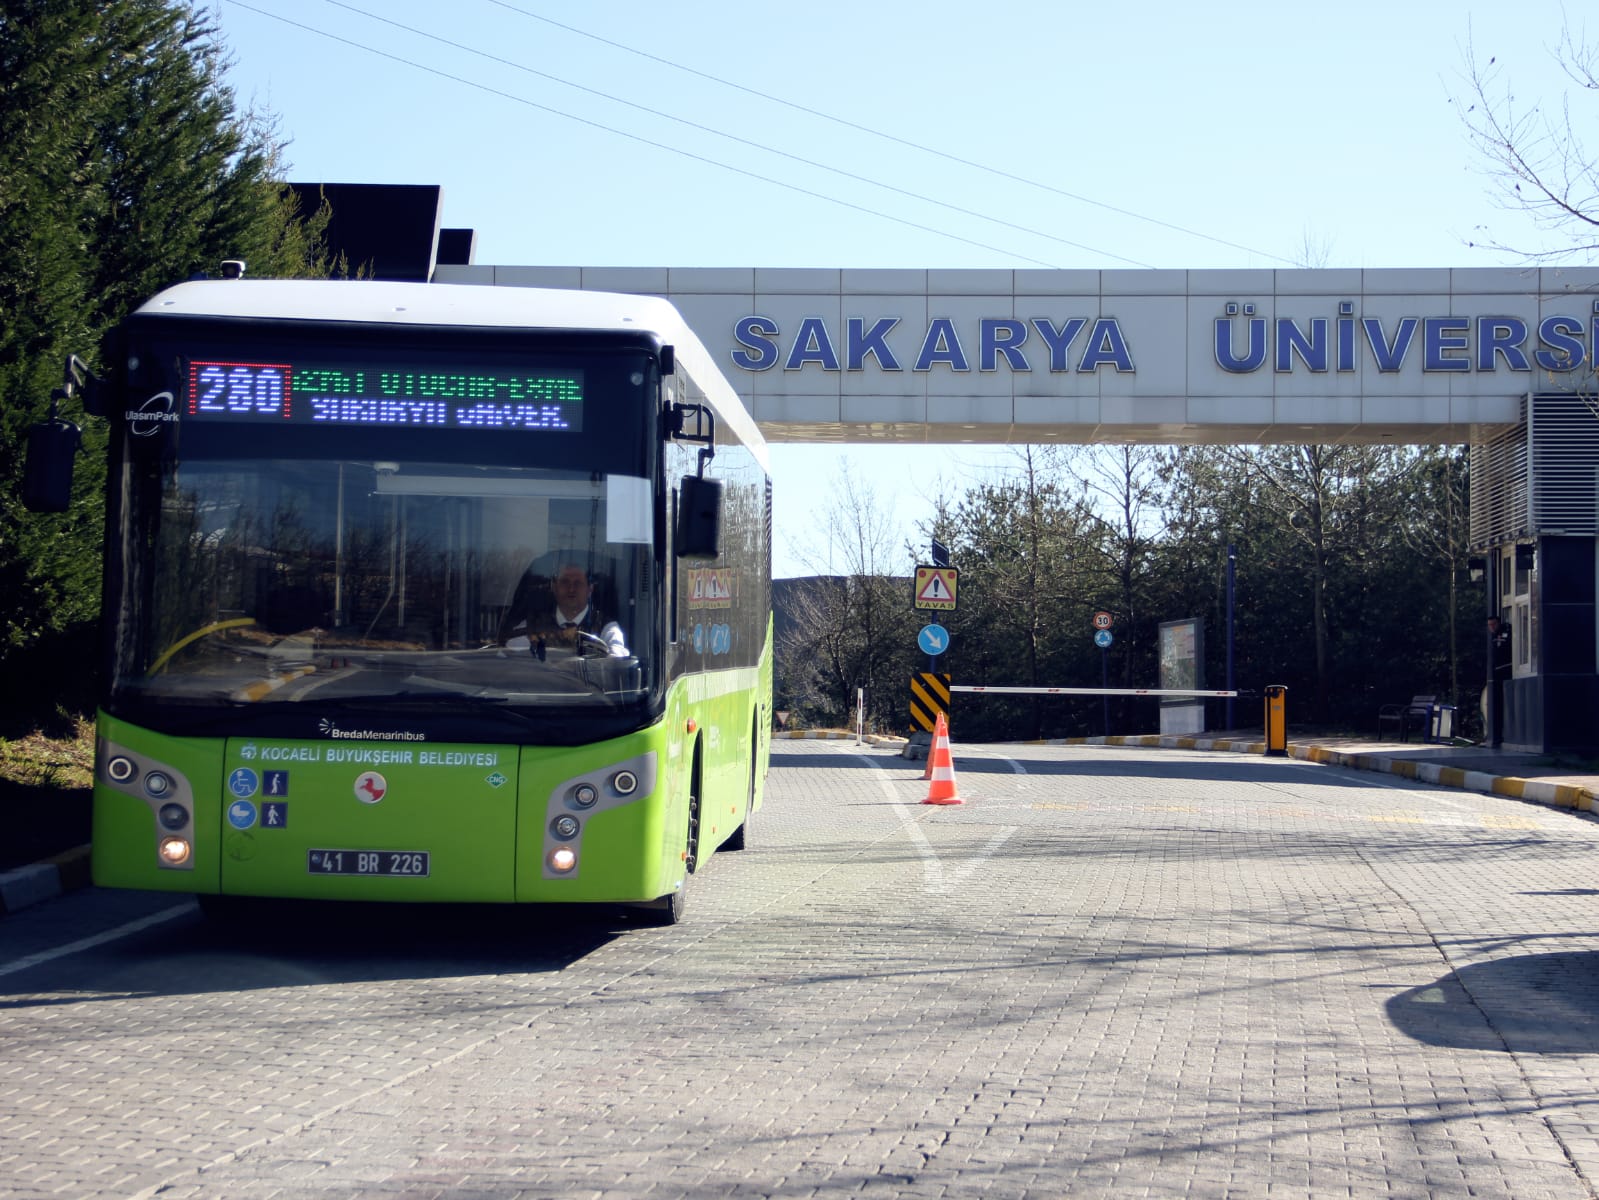 Sakarya Üniversitesi’ne Aktarmasız Ulaşım Başlıyor